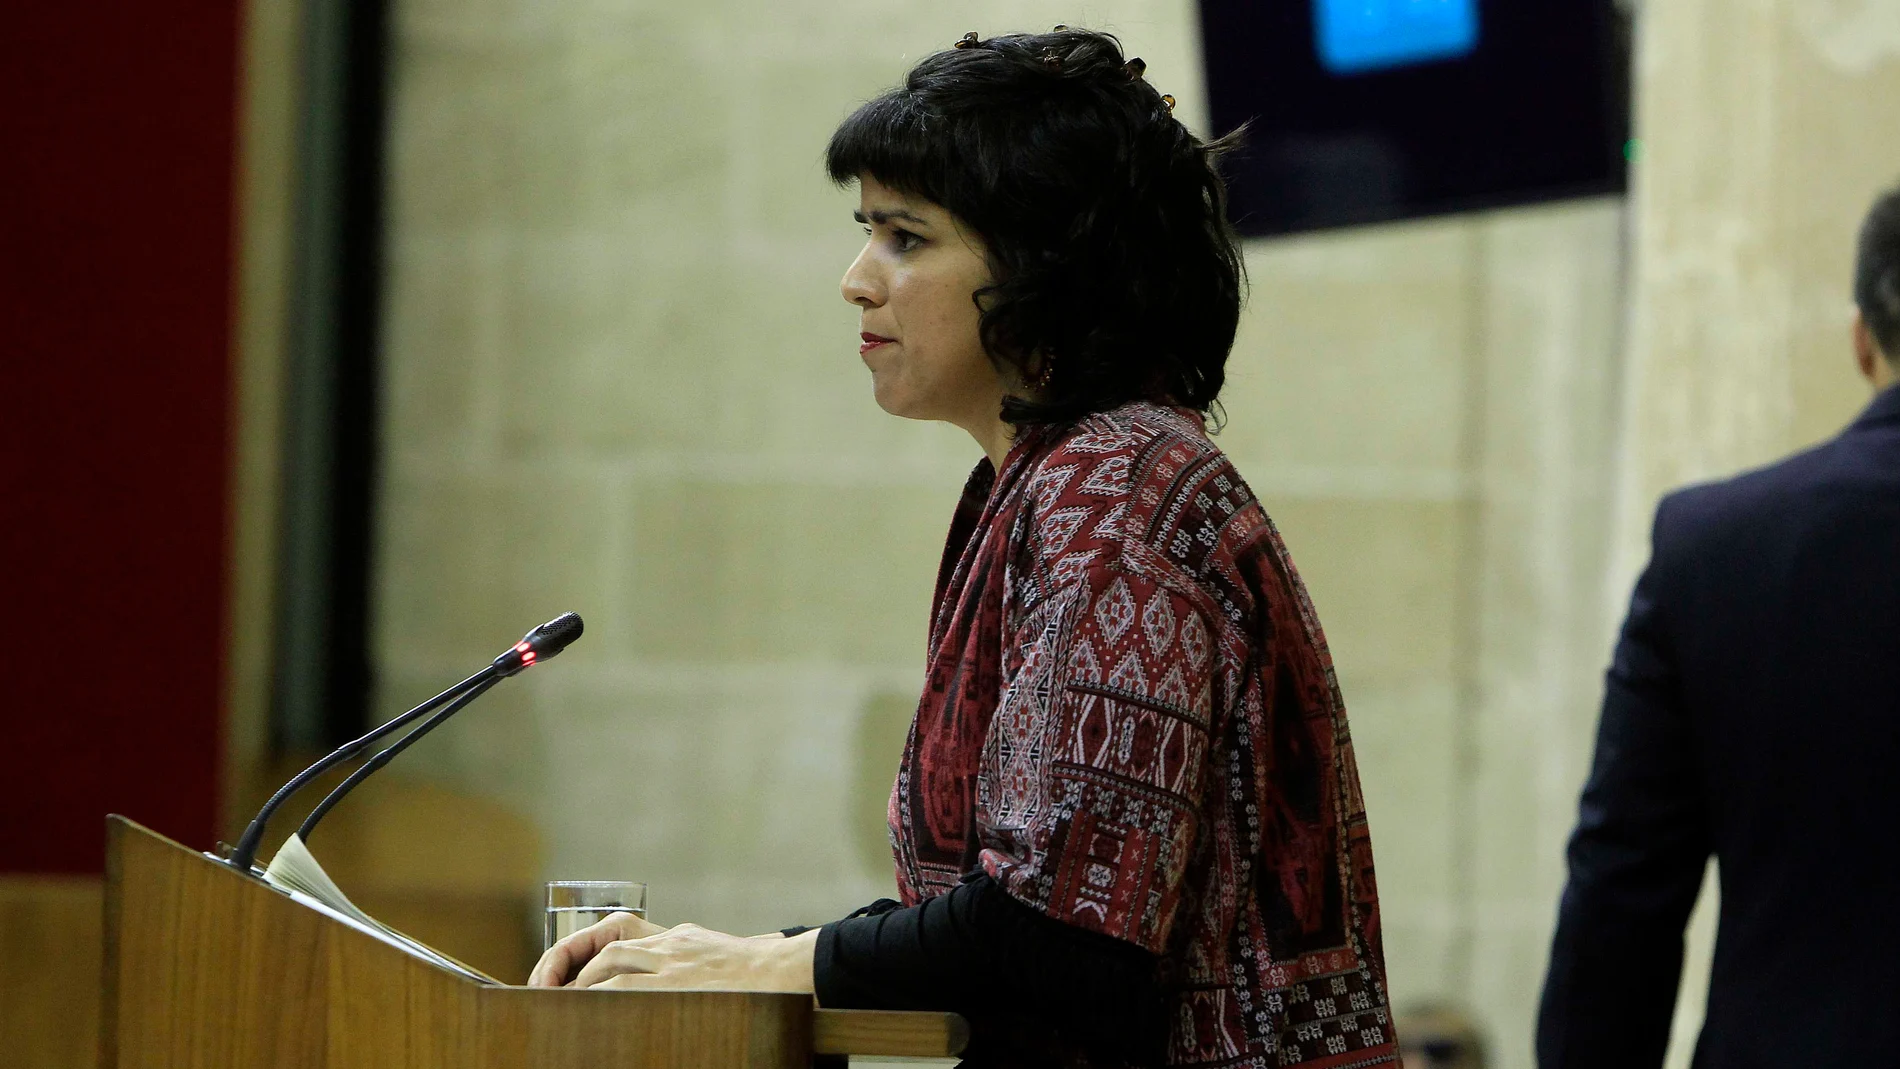 La líder de Adelante Andalucía es Teresa Rodríguez, en la imagen en el Parlamento autonómico